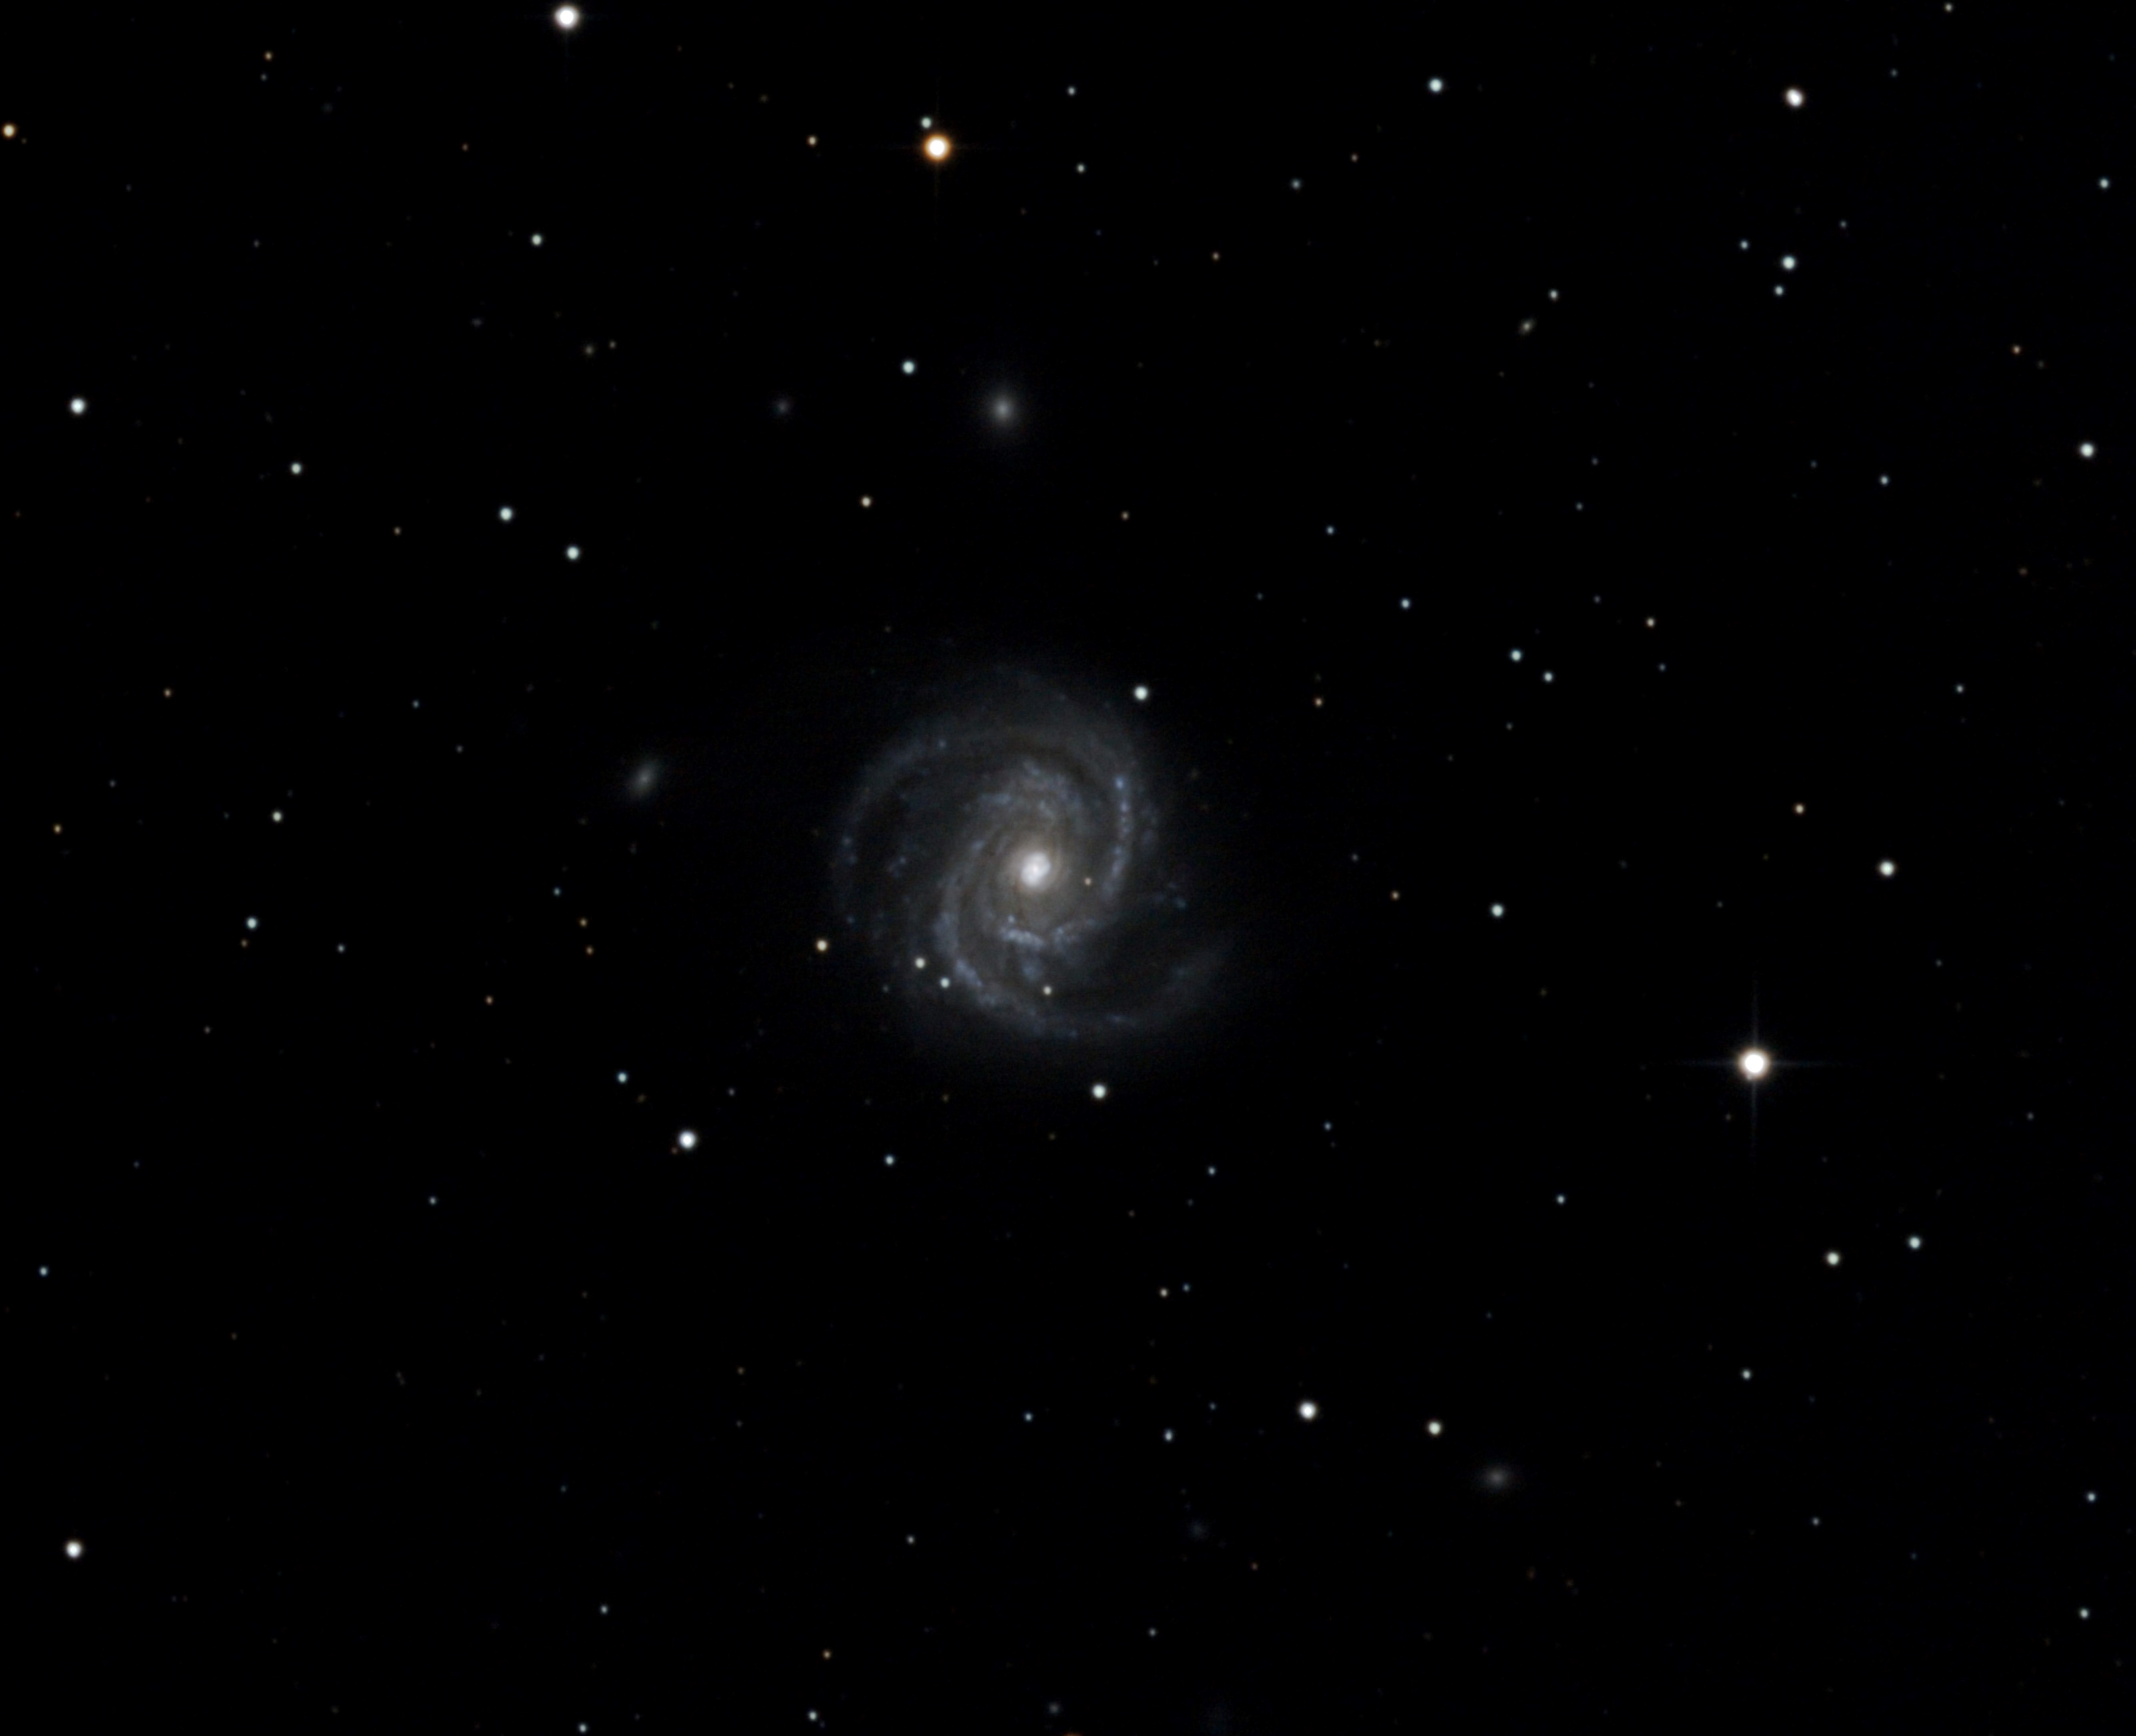 Messier 100b